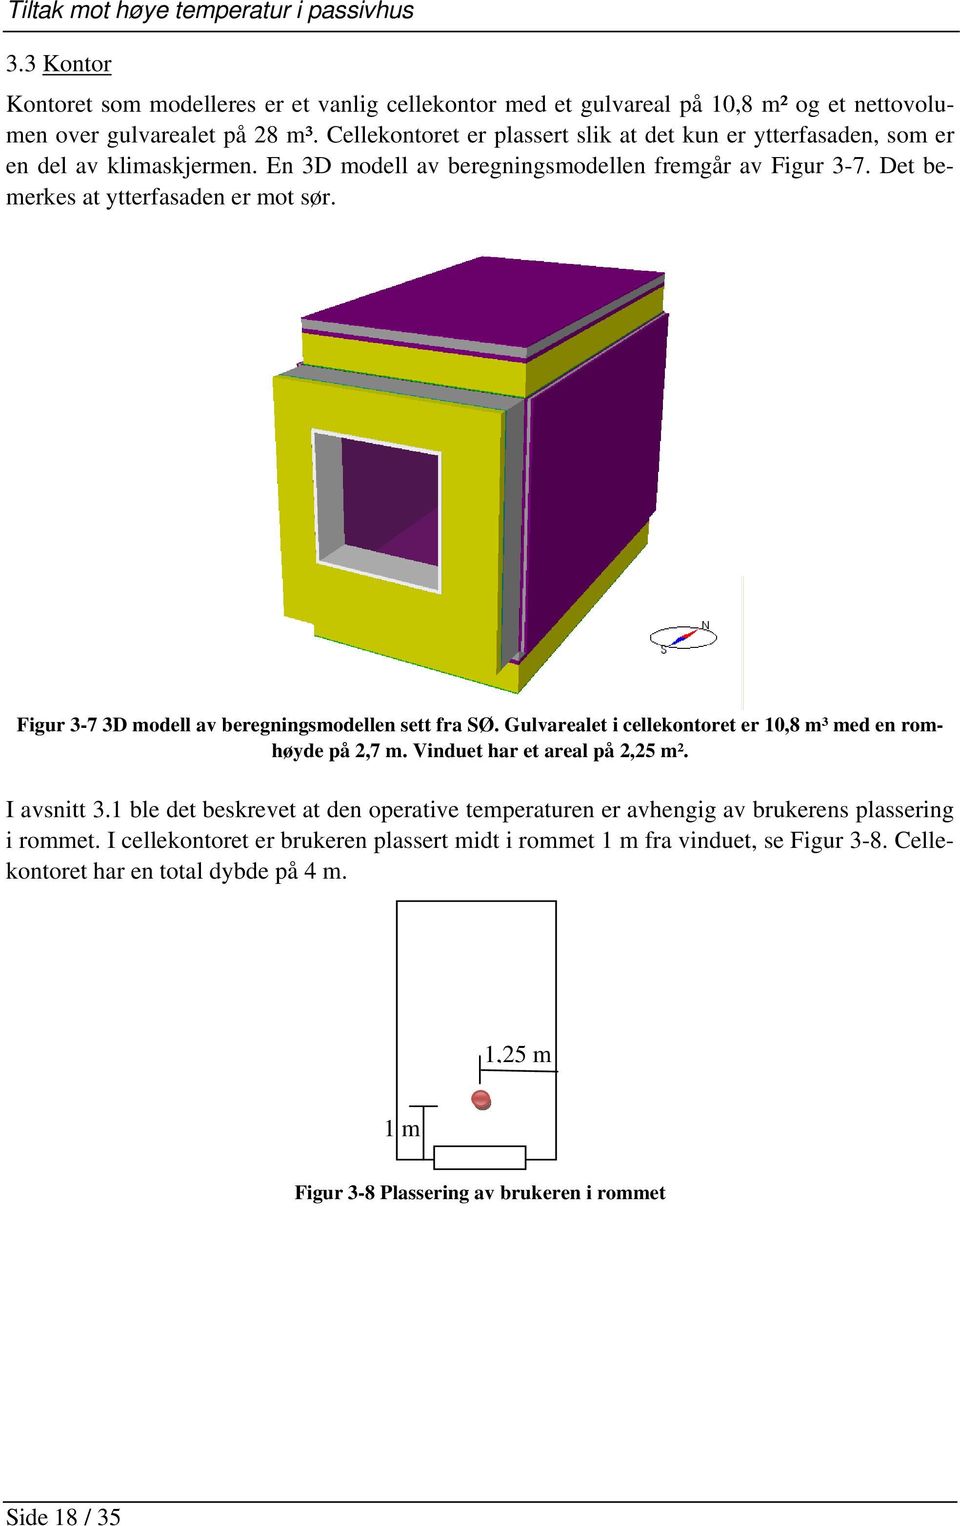 Figur 3-7 3D modell av beregningsmodellen sett fra SØ. Gulvarealet i cellekontoret er 10,8 m³ med en romhøyde på 2,7 m. Vinduet har et areal på 2,25 m². I avsnitt 3.